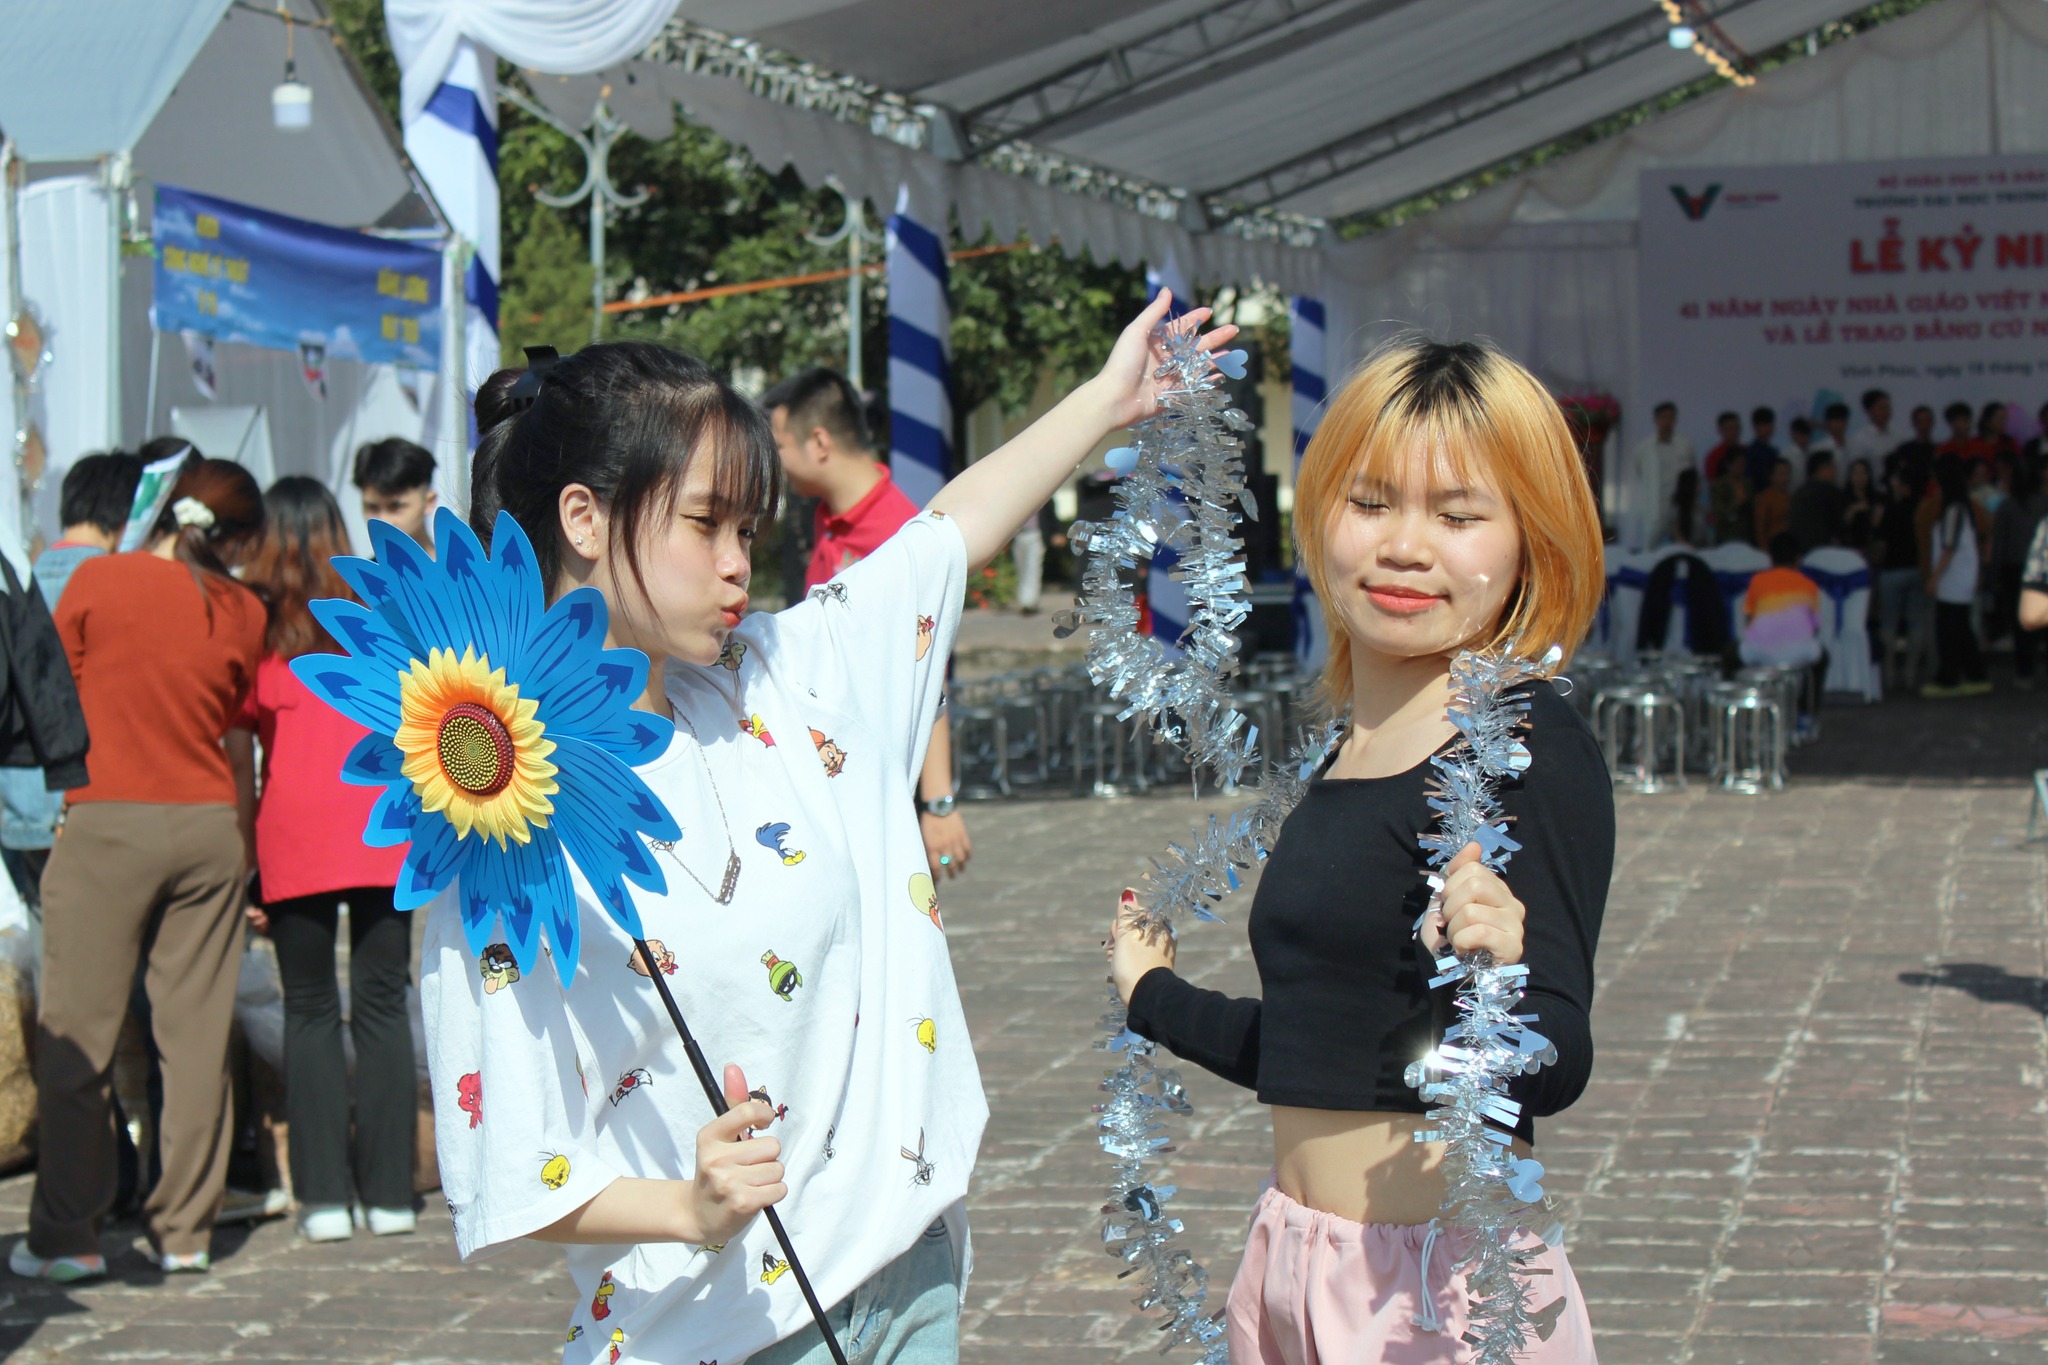 Sinh viên Truyền thông tạo nhiều dấu ấn trong cuộc thi thiết kế trại do trường Đại học Trưng Vương tổ chức cùng chuỗi hoạt động kỷ niệm Ngày nhà giáo Việt Nam 20/11_2